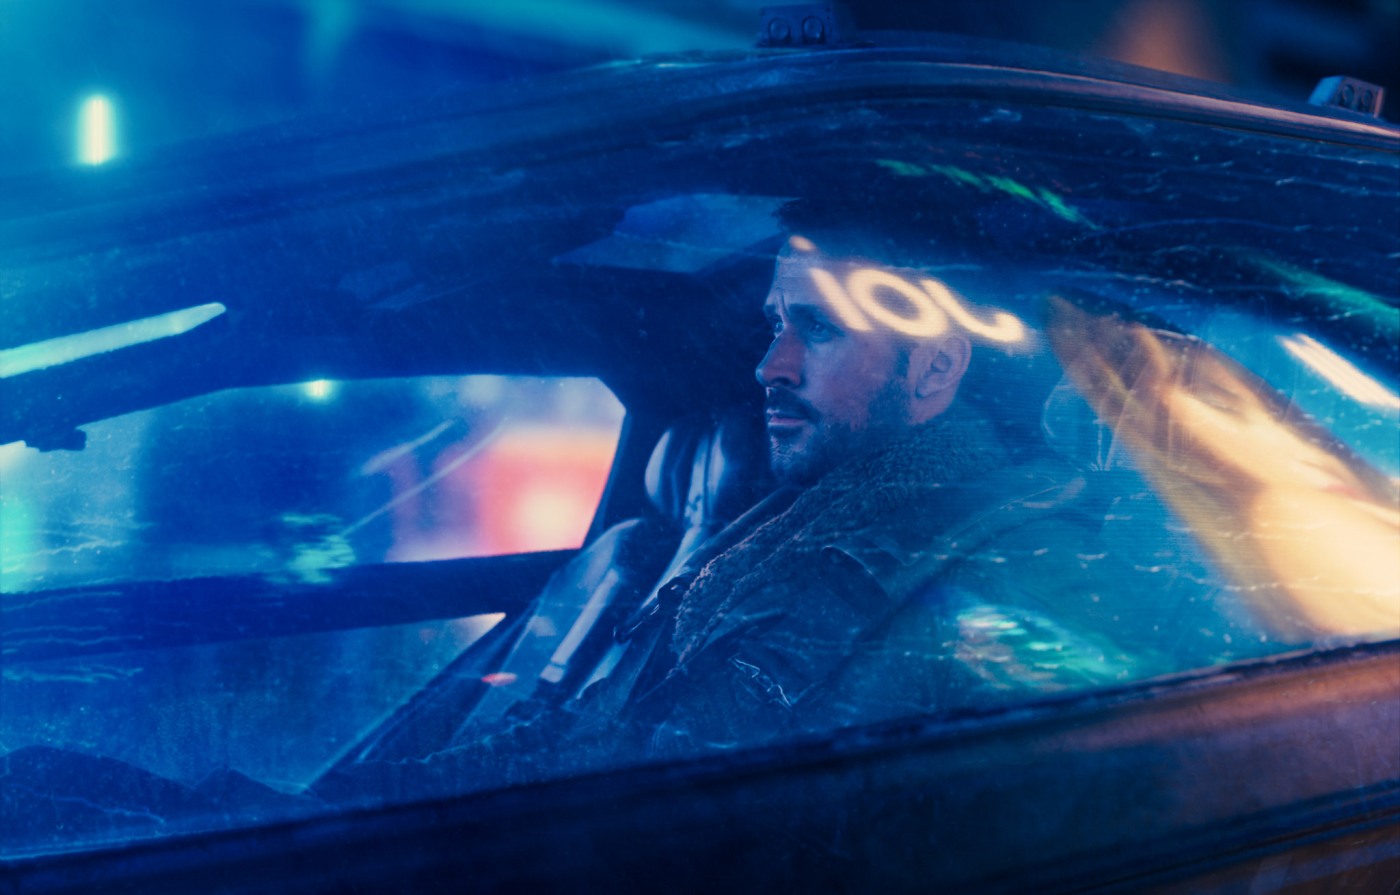 Ryan Gosling in Blade Runner